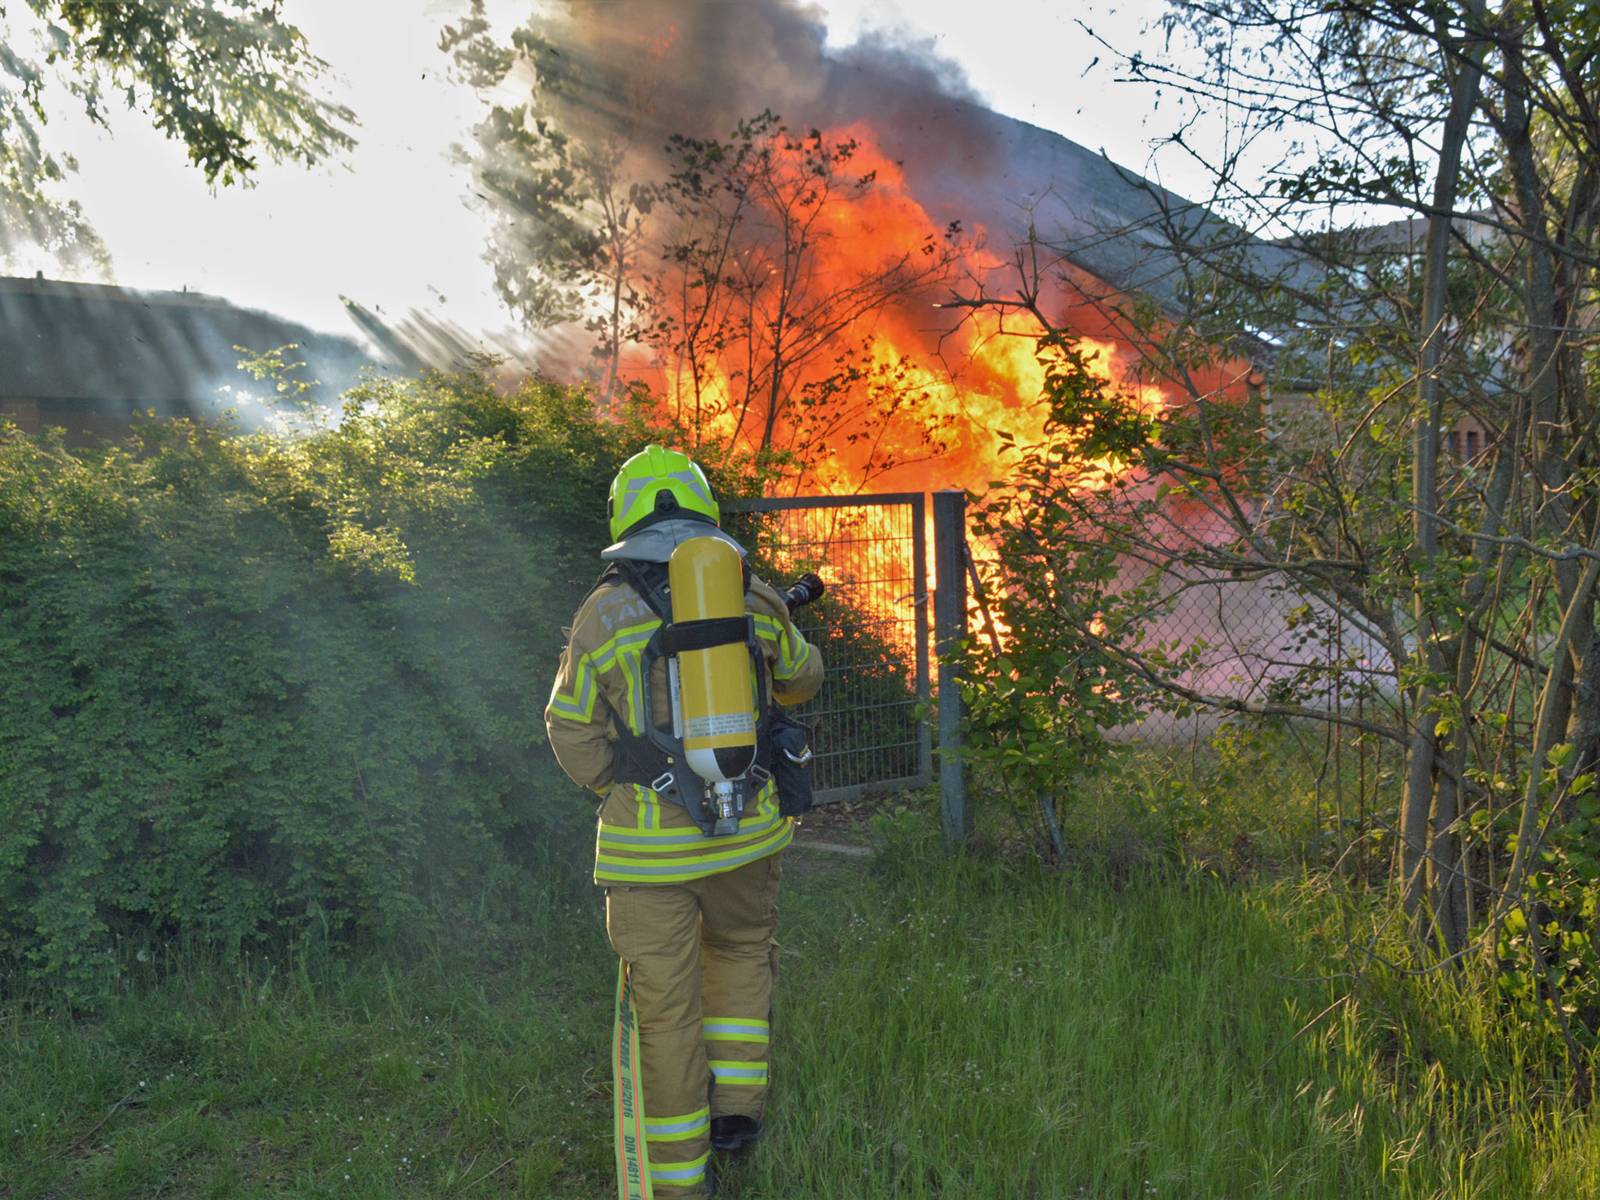 Am Montagabend brannte ein Geräteschuppen auf dem Gelände des städtischen Horts im Spielpark Roderbruch.